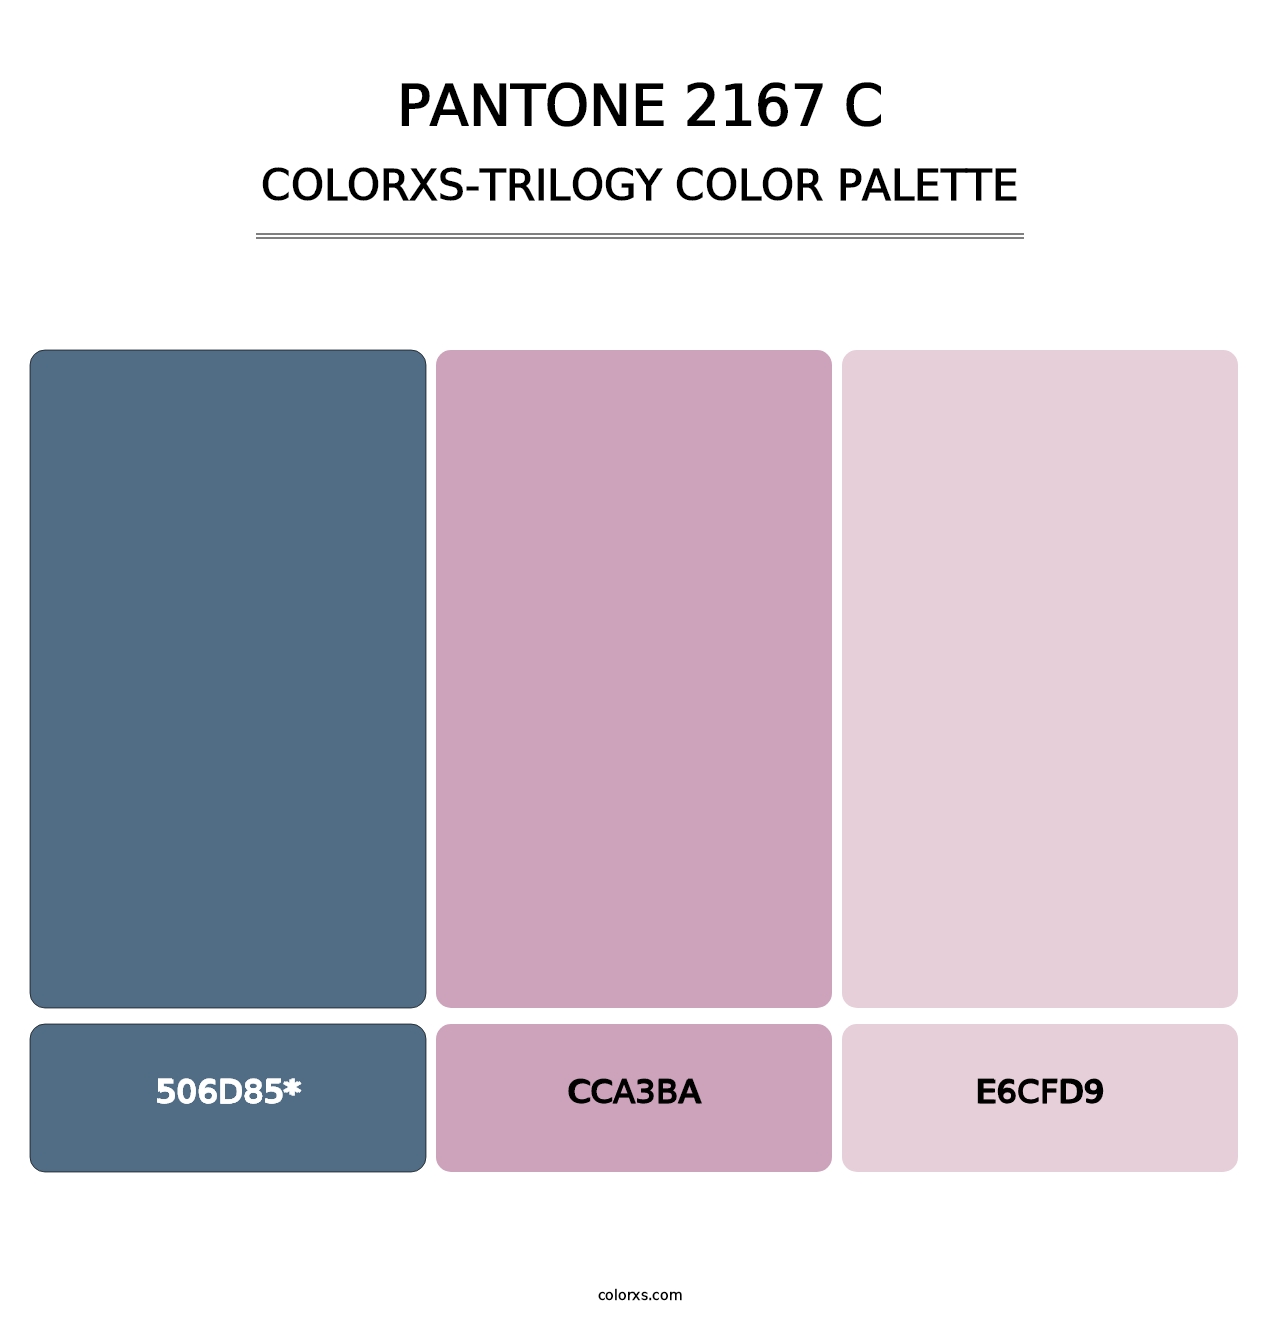 PANTONE 2167 C - Colorxs Trilogy Palette